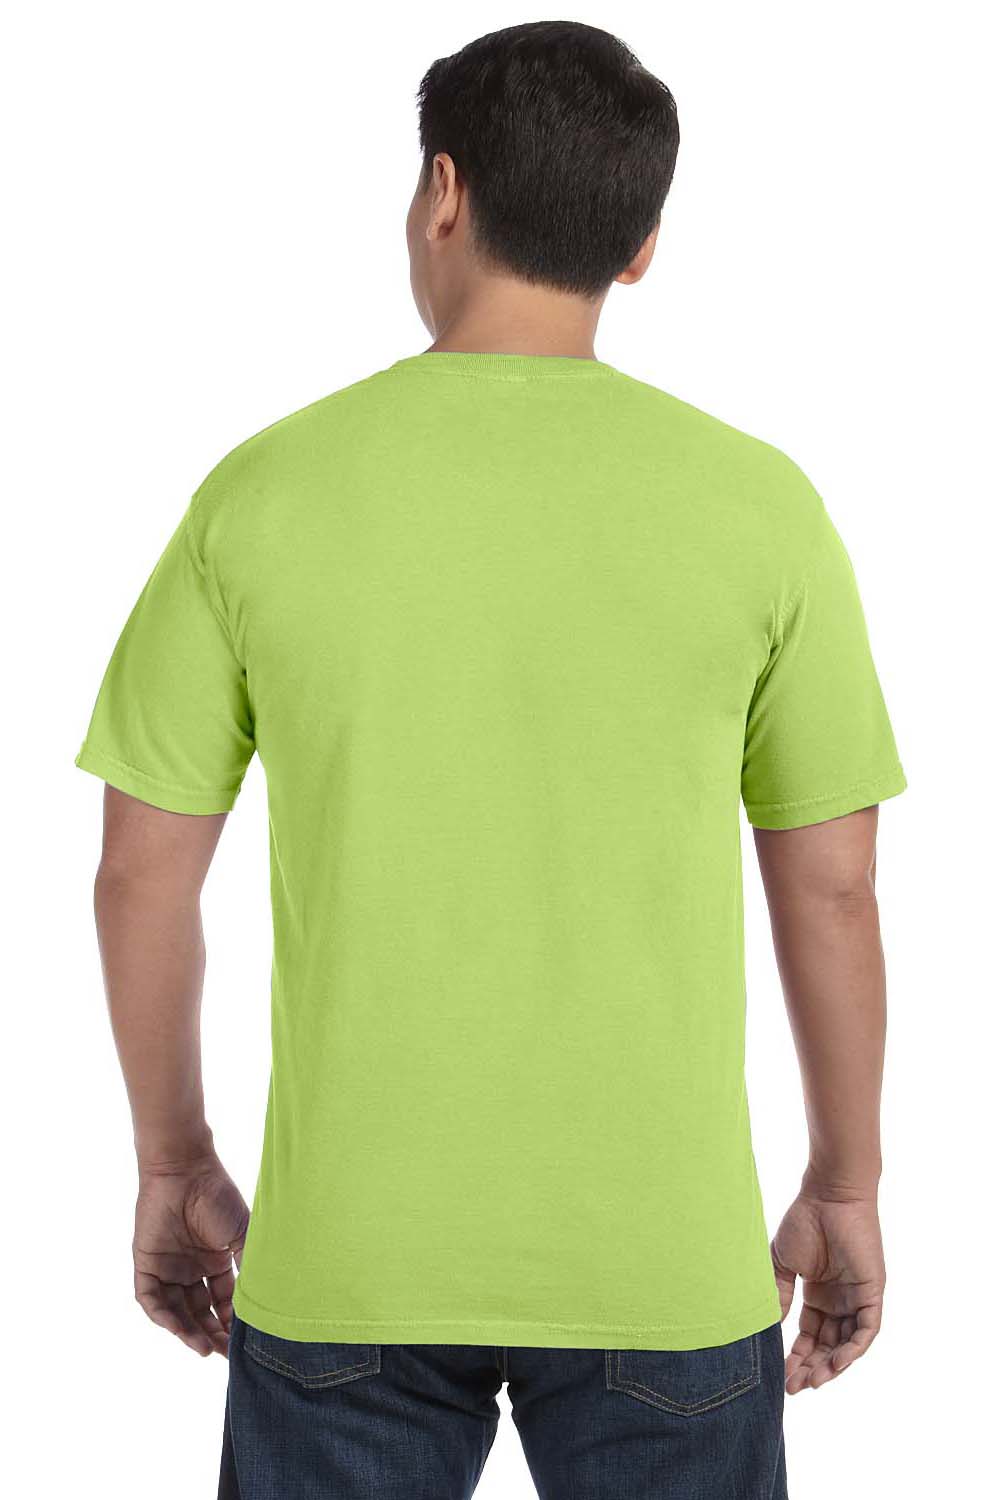 Comfort Colors C1717 Mens Short Sleeve Crewneck T-Shirt Kiwi Green Back